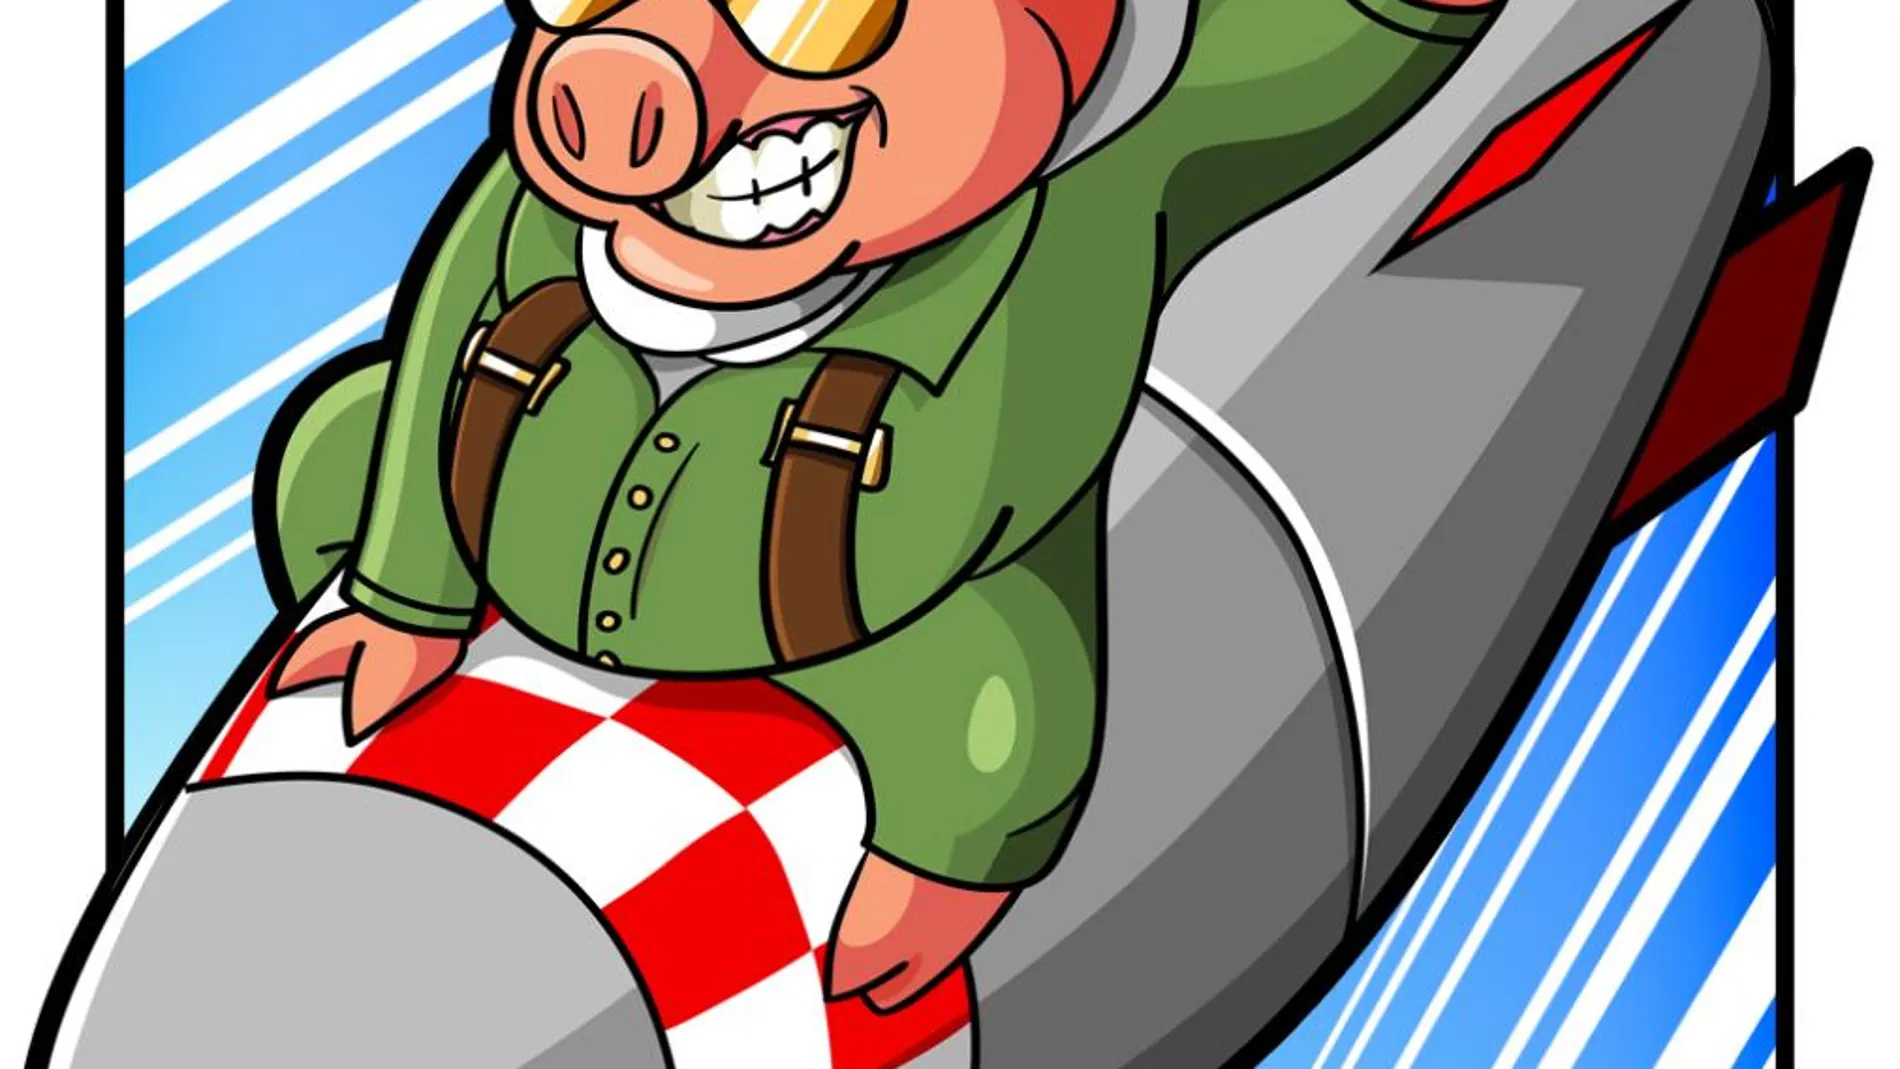 Kamikaze Pigs: ¡Mira, unos cerdos volando!